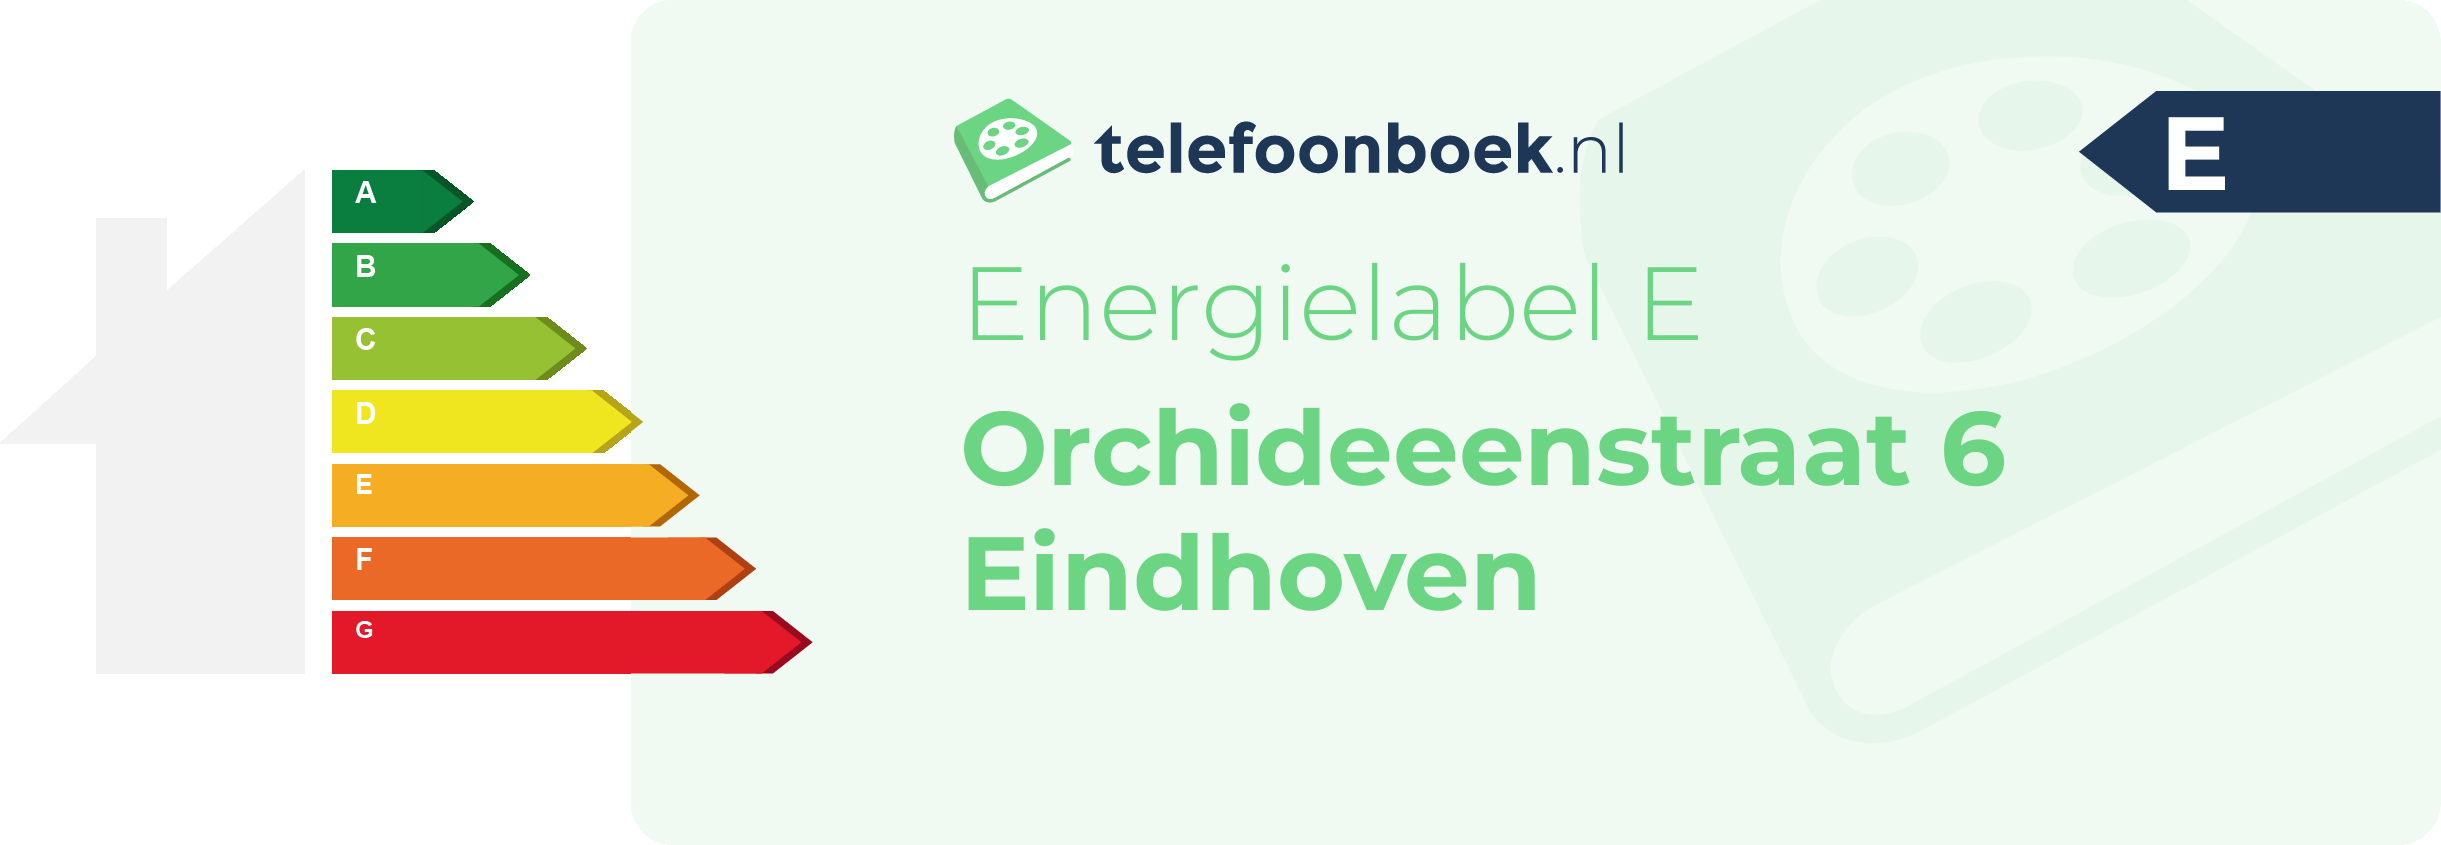 Energielabel Orchideeenstraat 6 Eindhoven